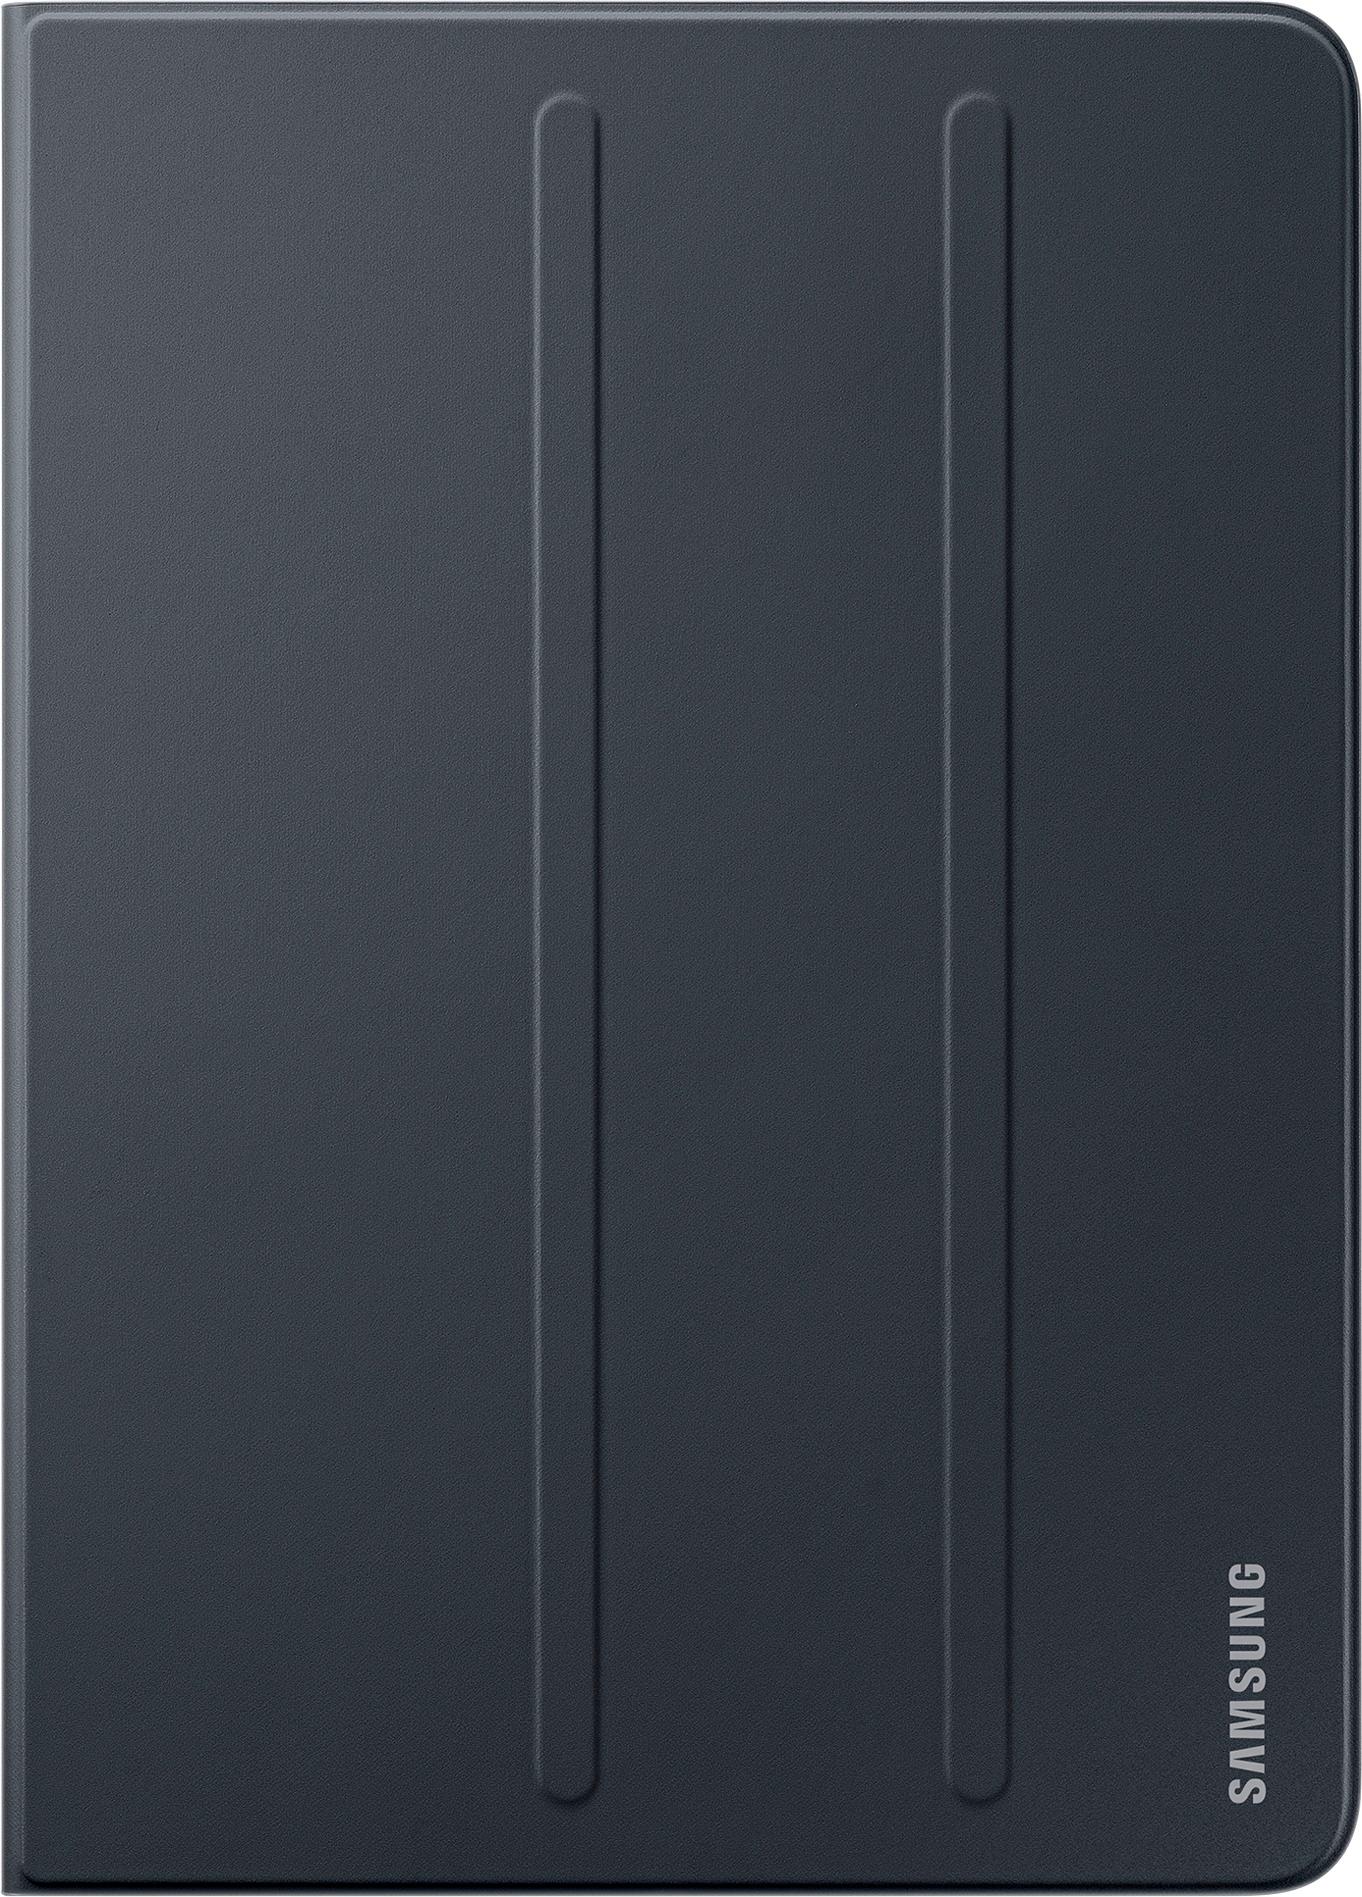 Samsung Folio for Galaxy Tab S3 9.7" Black EF-BT820PBEGUJ - Best Buy